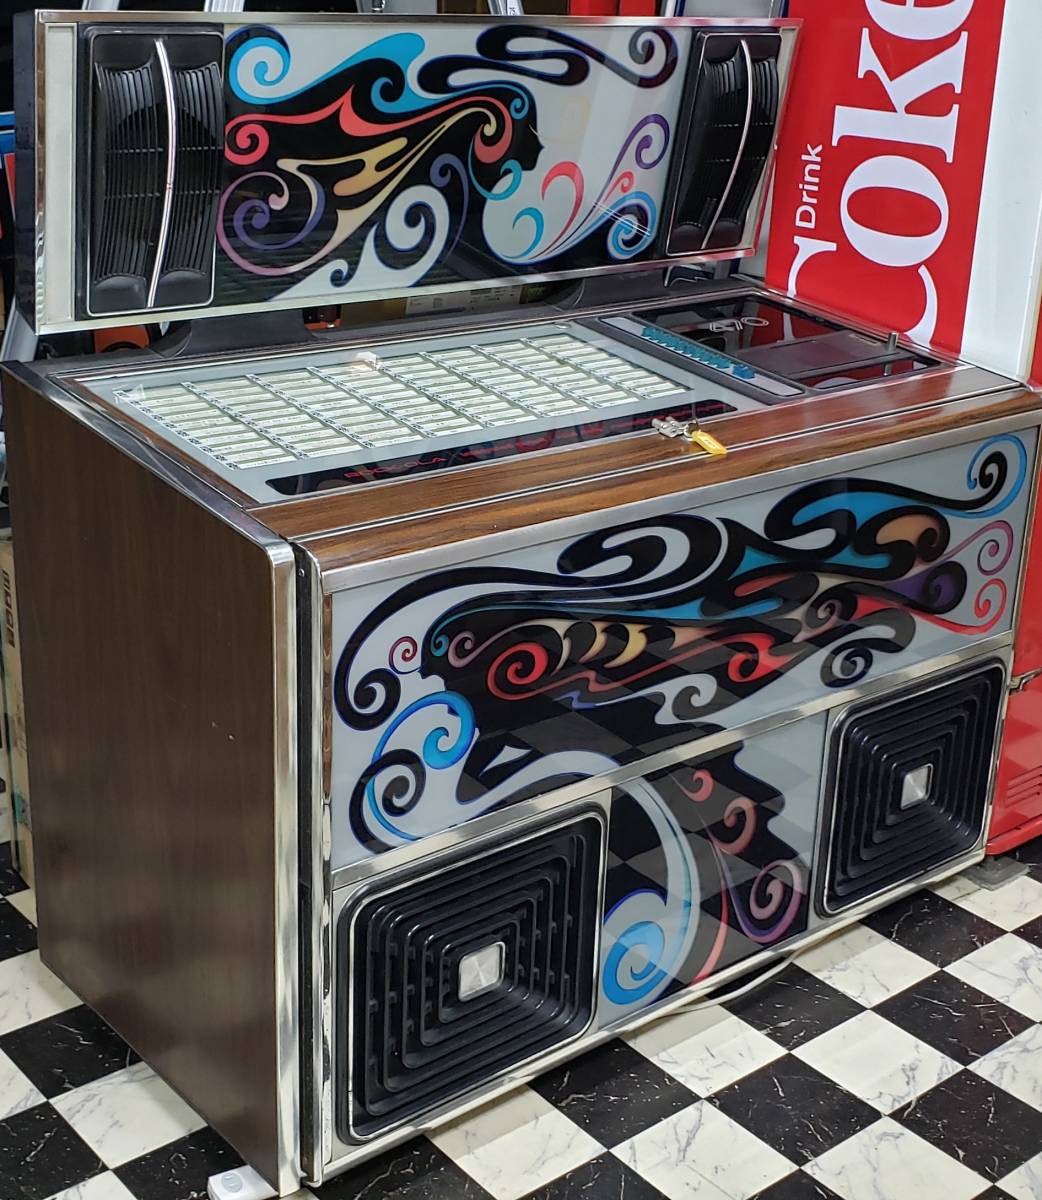 ROCK-OLA 470 juke box! # gumball machine . exhibited!!